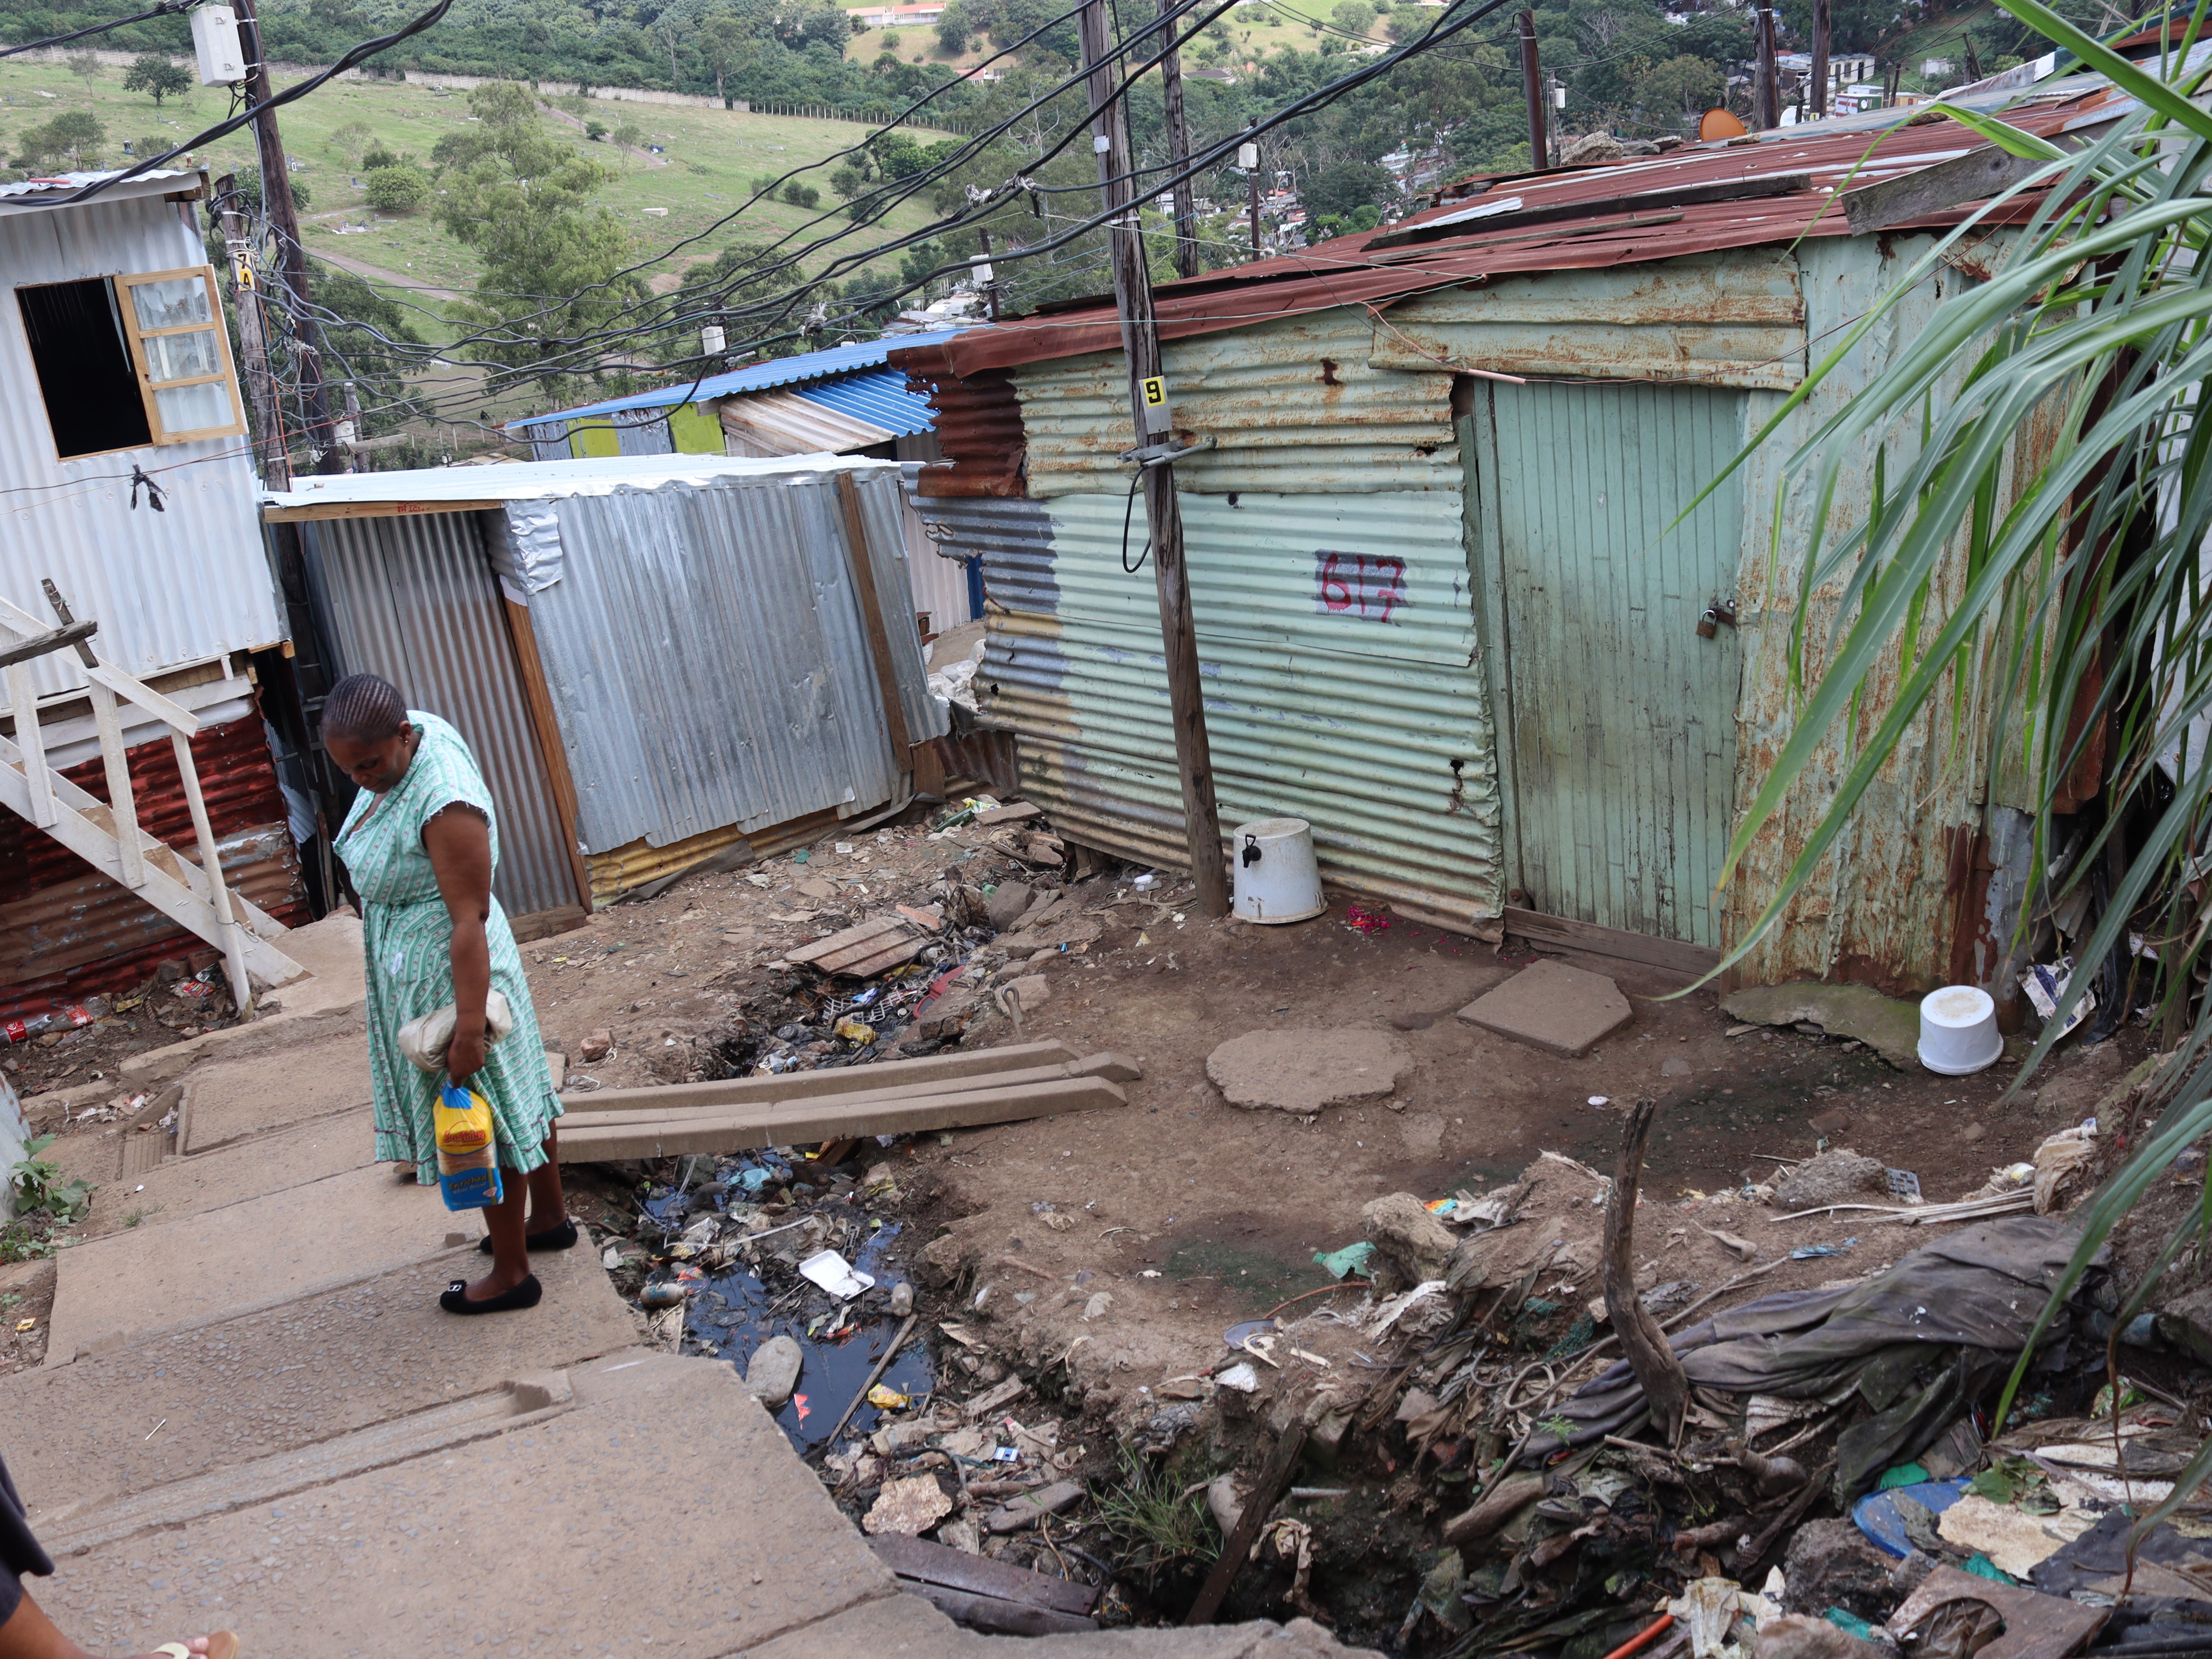 eThekwini informal settlement